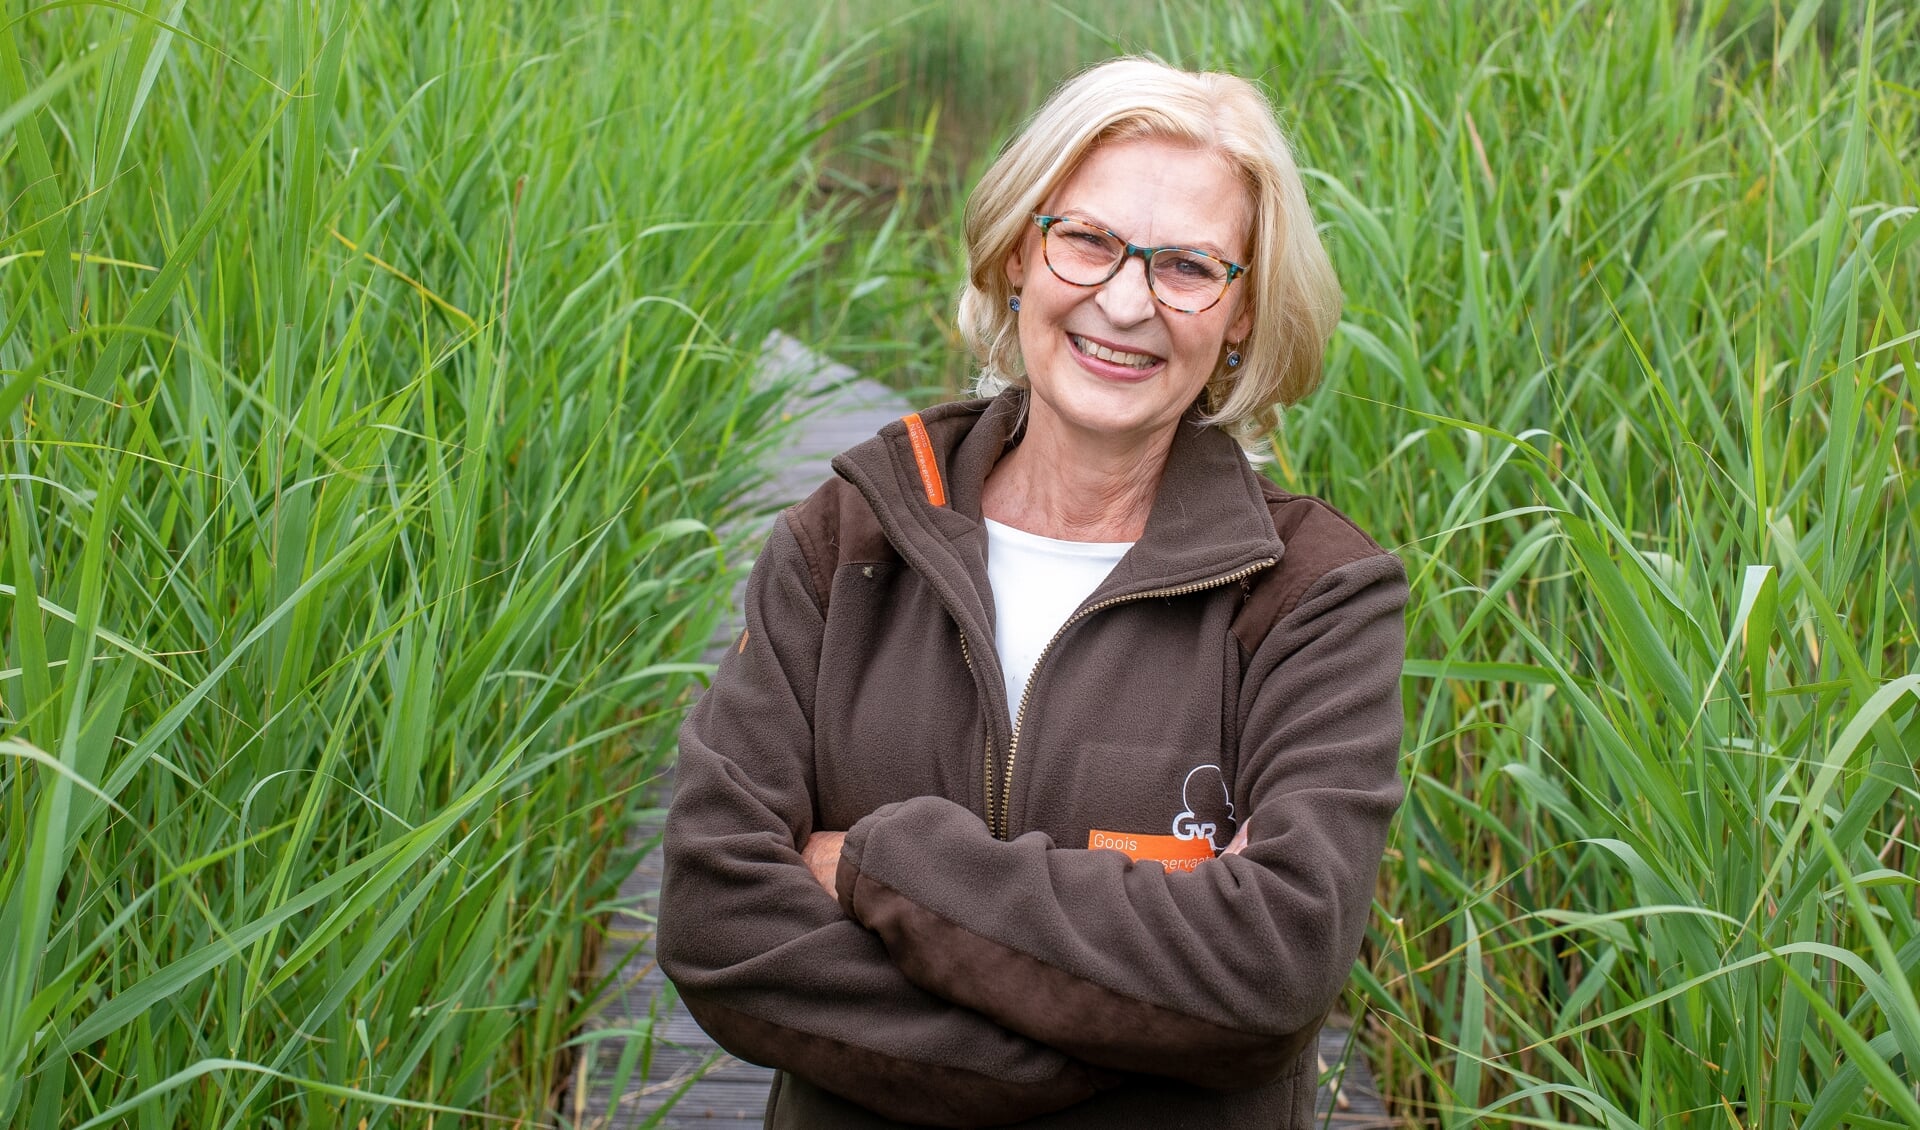 Directeur-rentmeester Karin Kos van Stichting Goois Natuurreservaat.